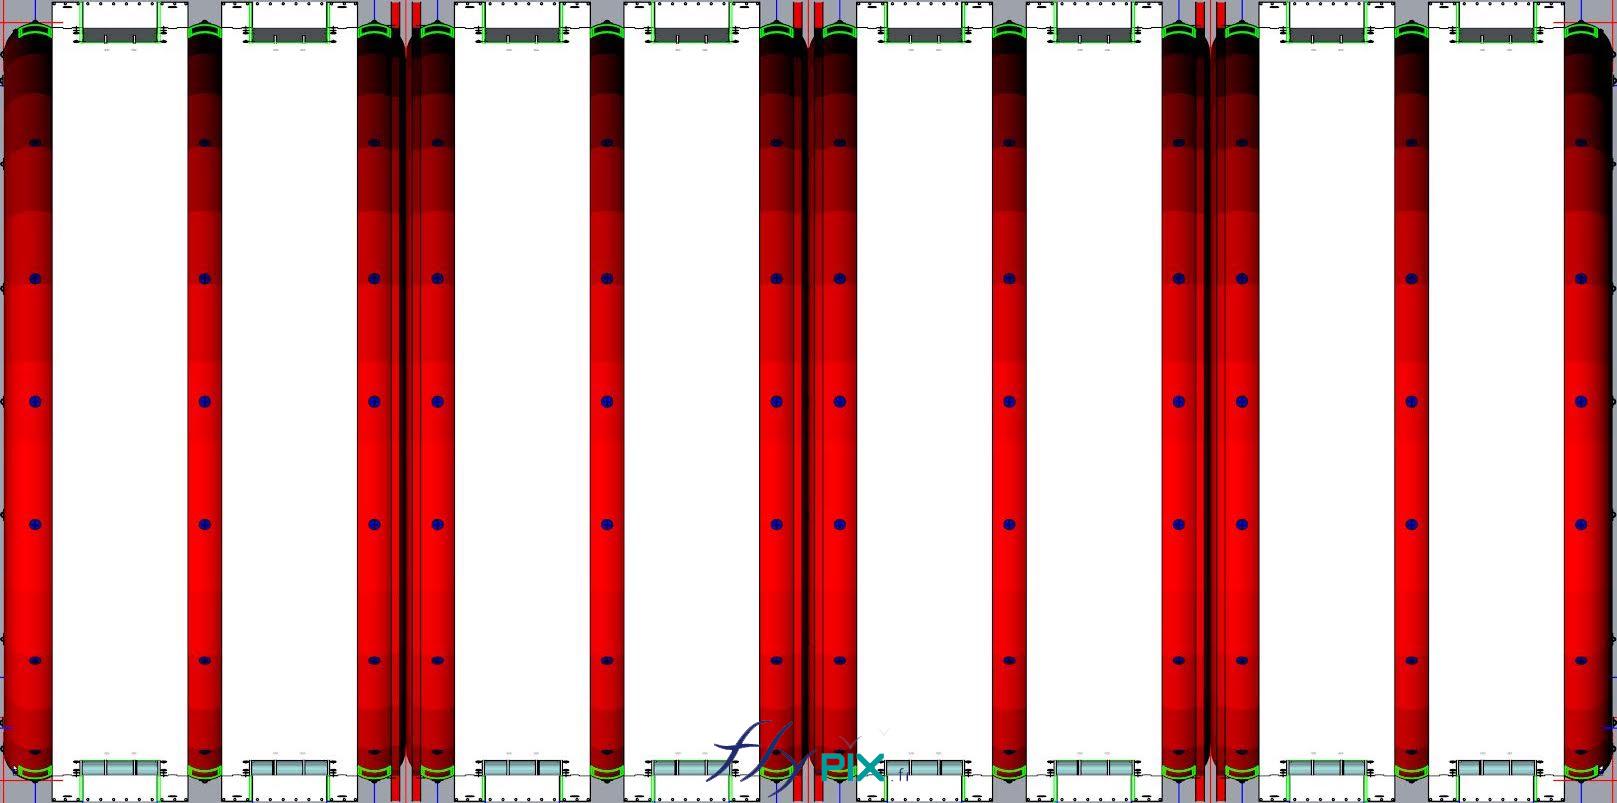 FLYPIX Etude modelisation 3D infographie conception tente reception public air captif tunnel pompe regulateur pression enveloppe PVC 06mm simple peau UNION BORDEAUX BELGES 3